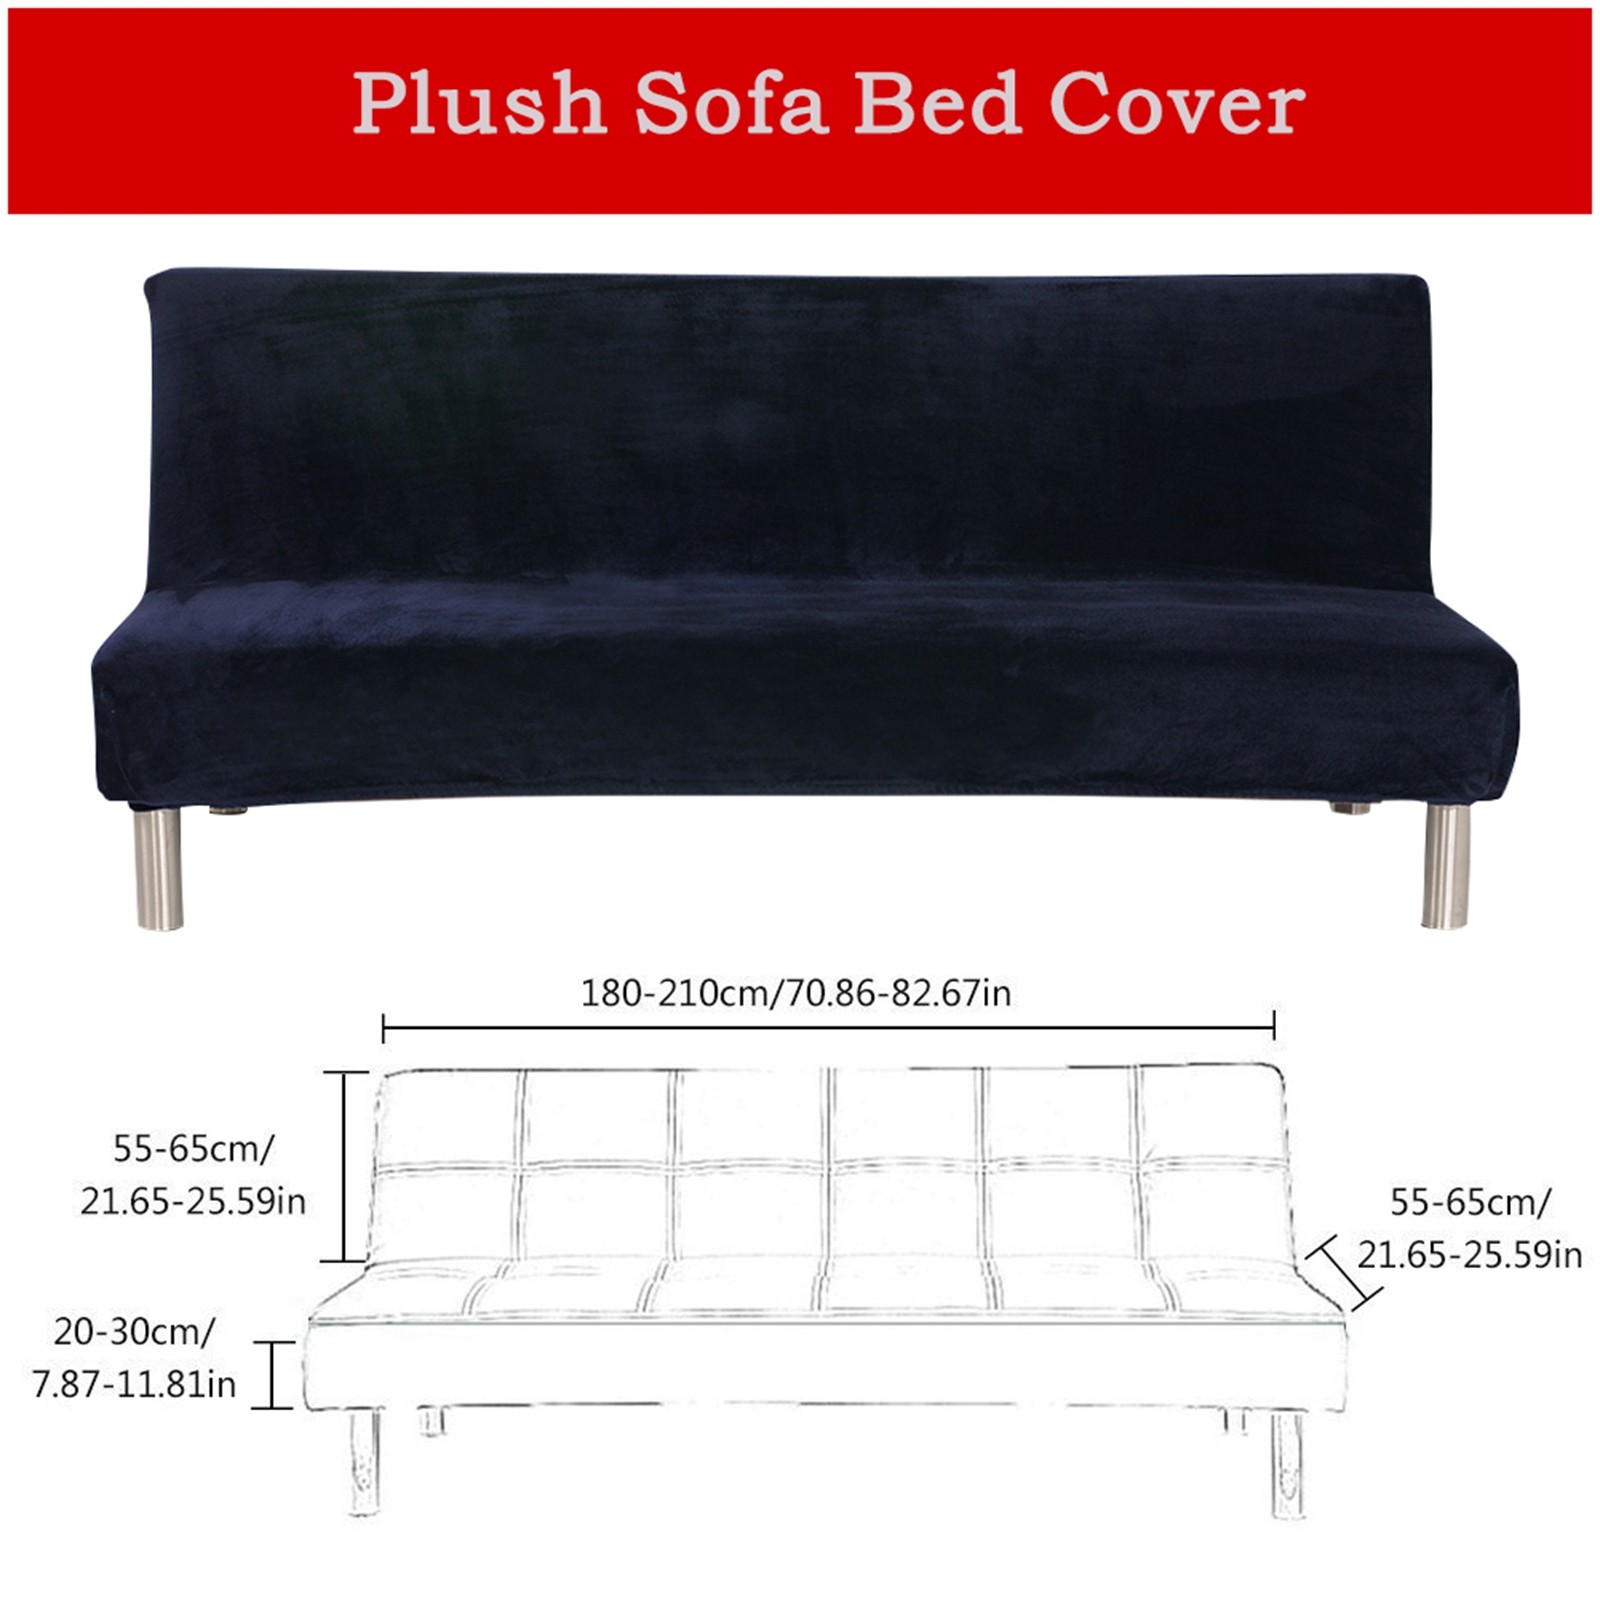 Thick Plush Futon Cover Stretch Armless Sofa Bed Slipcover Soft Couch Sofa Cover Futon Slipcover - image 3 of 5